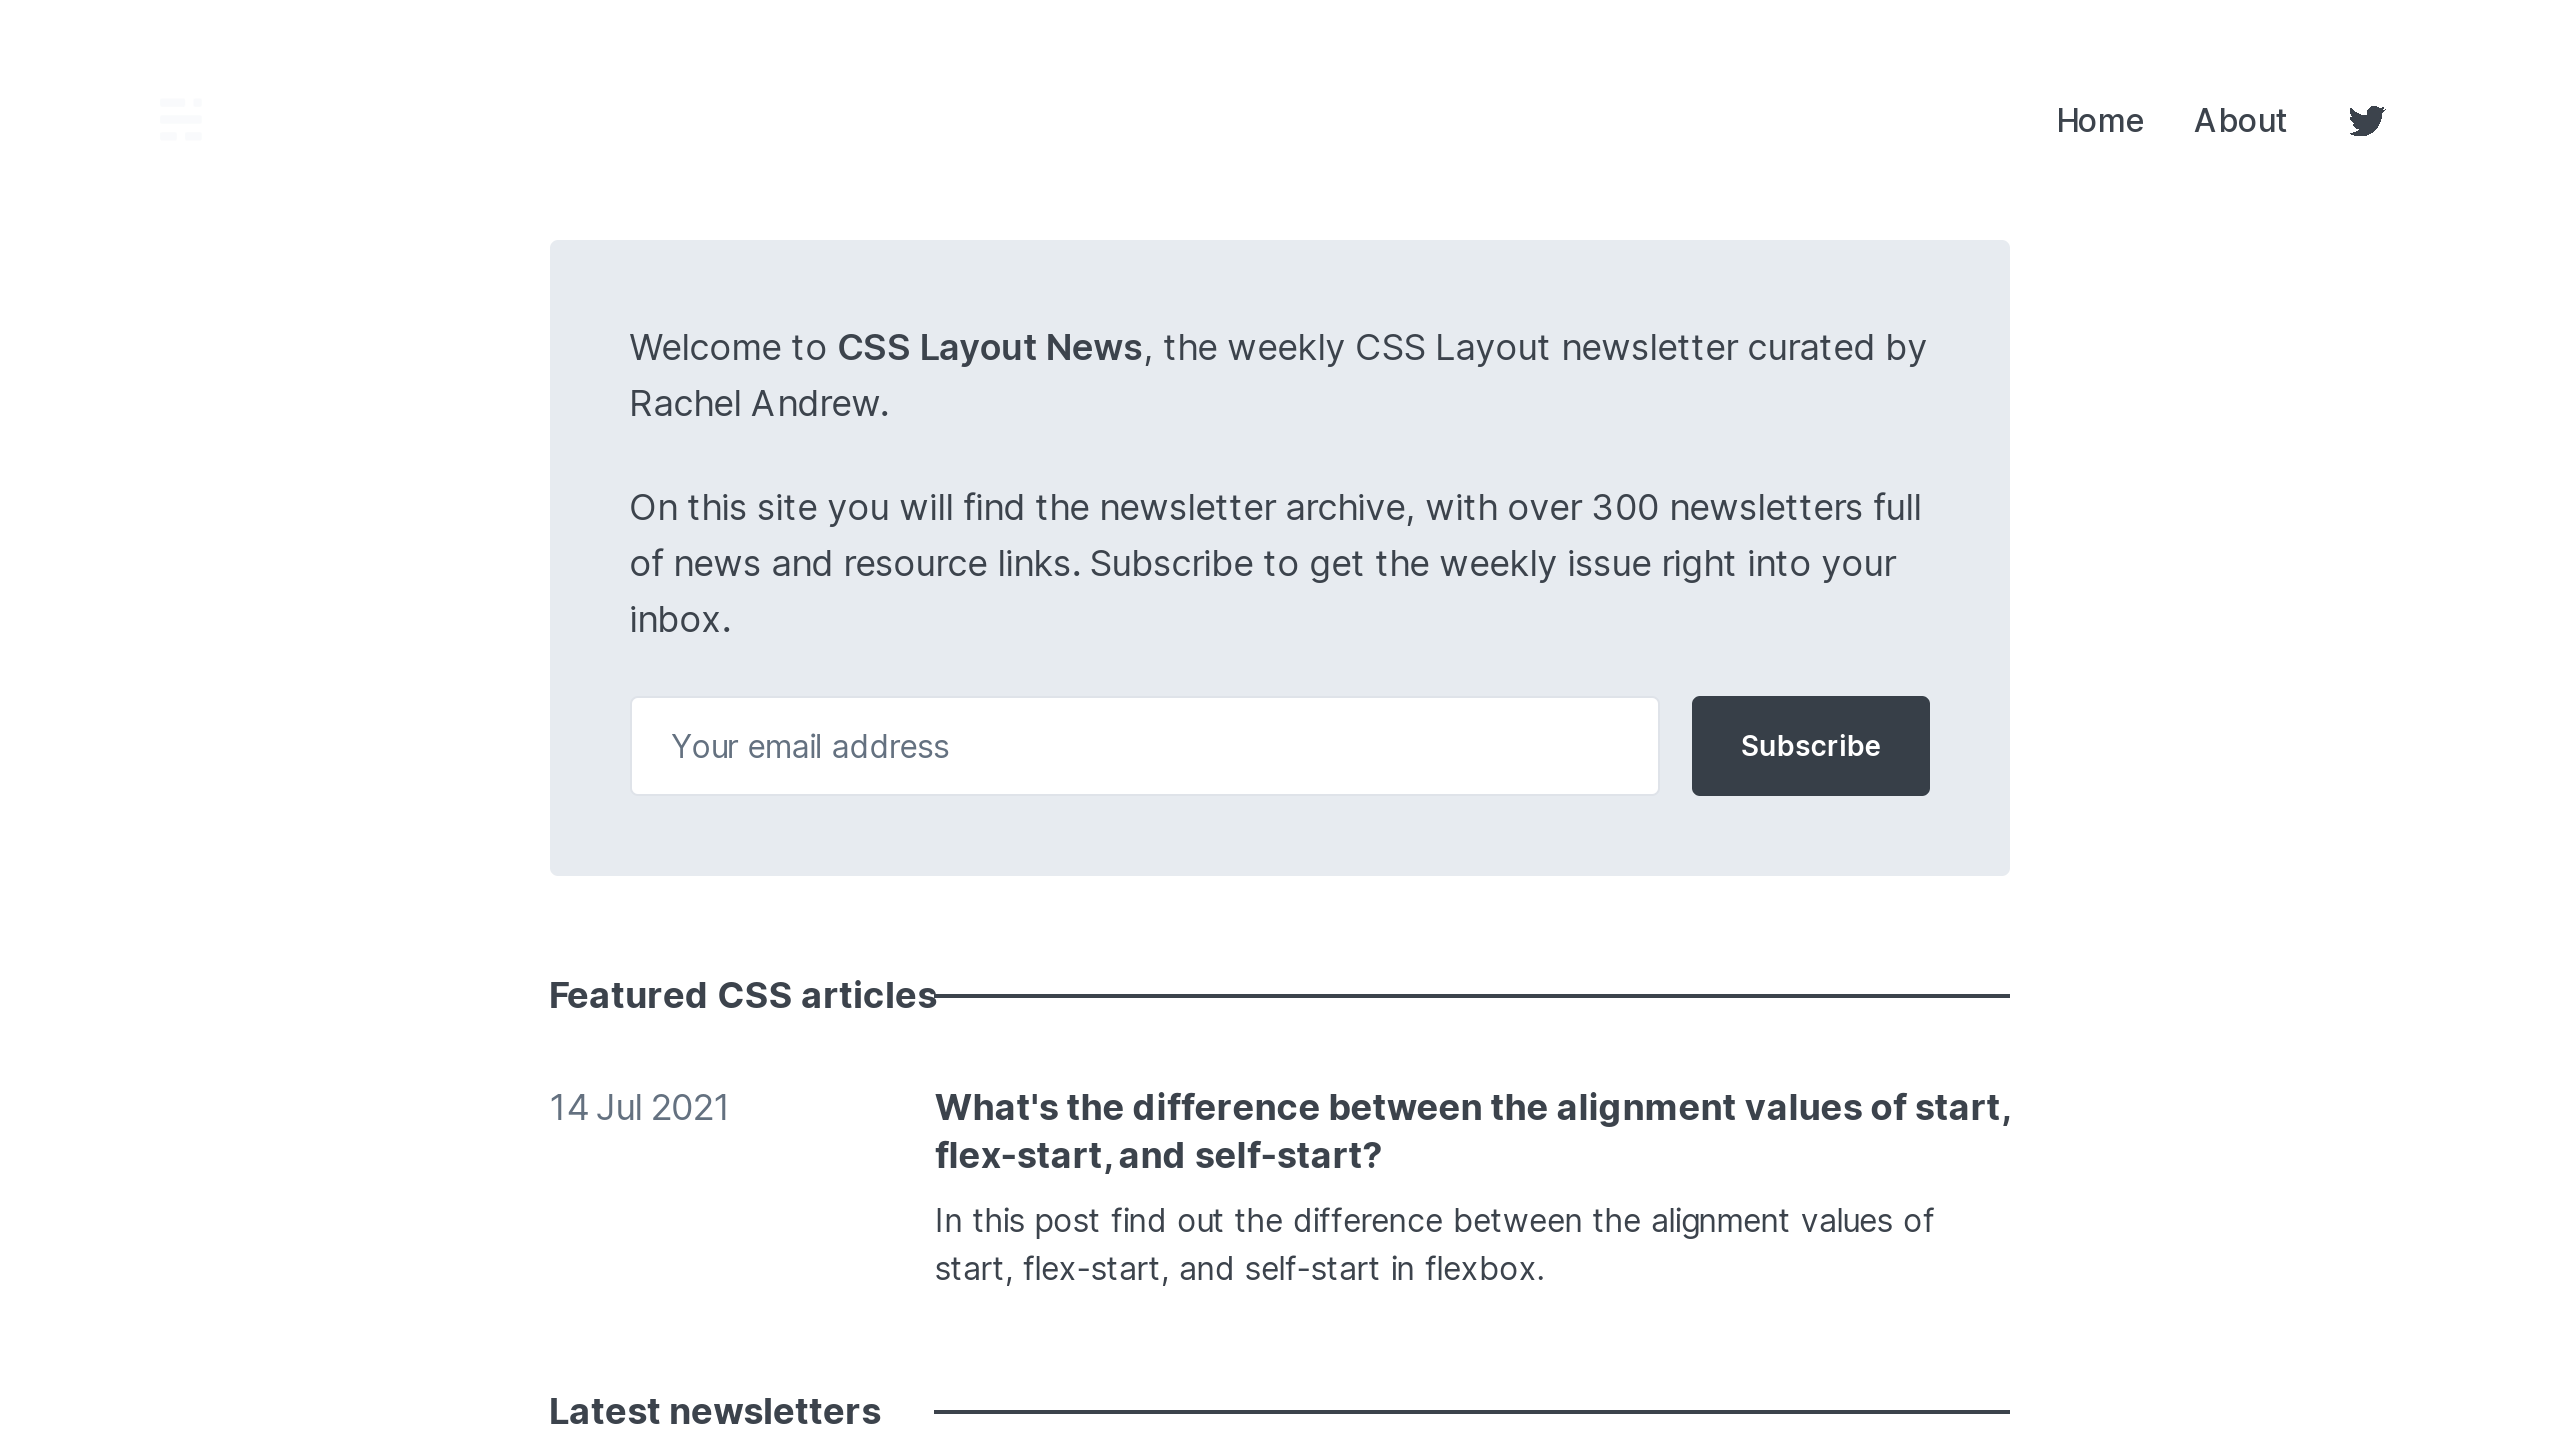 CSS Layout News's website screenshot